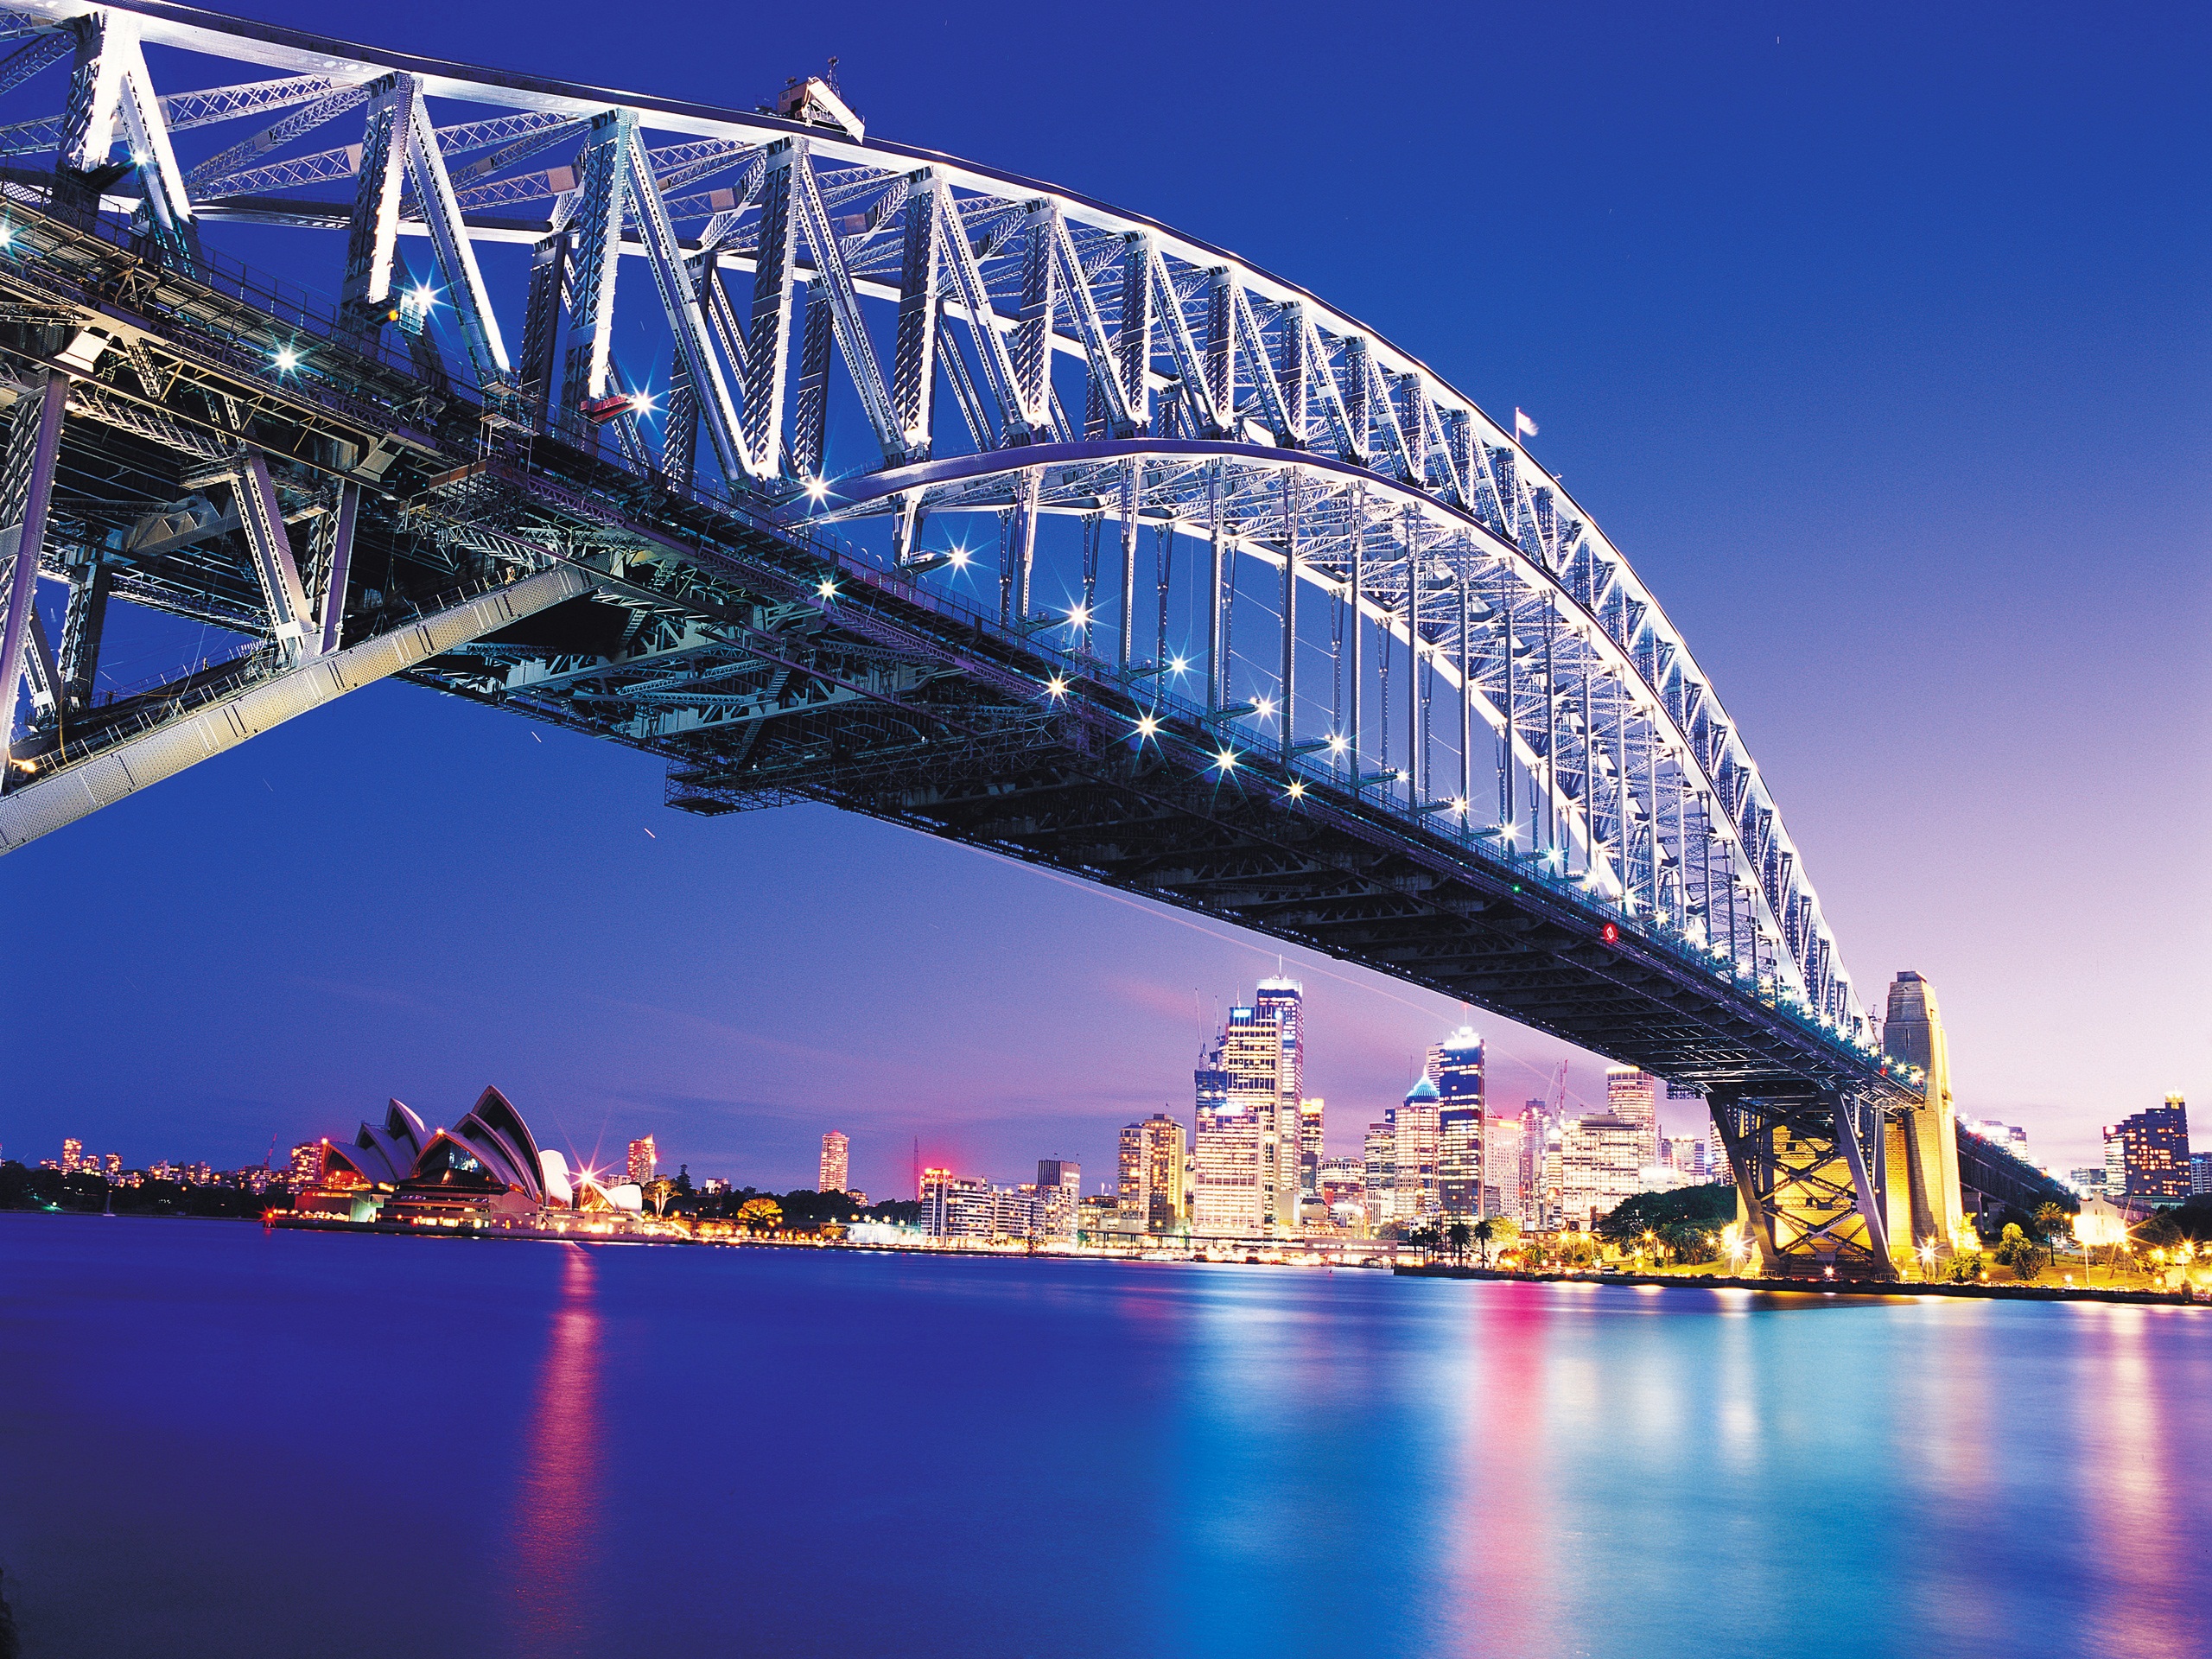 Amazing Sydney Bridge7116412161 - Amazing Sydney Bridge - Tower, Sydney, bridge, Amazing